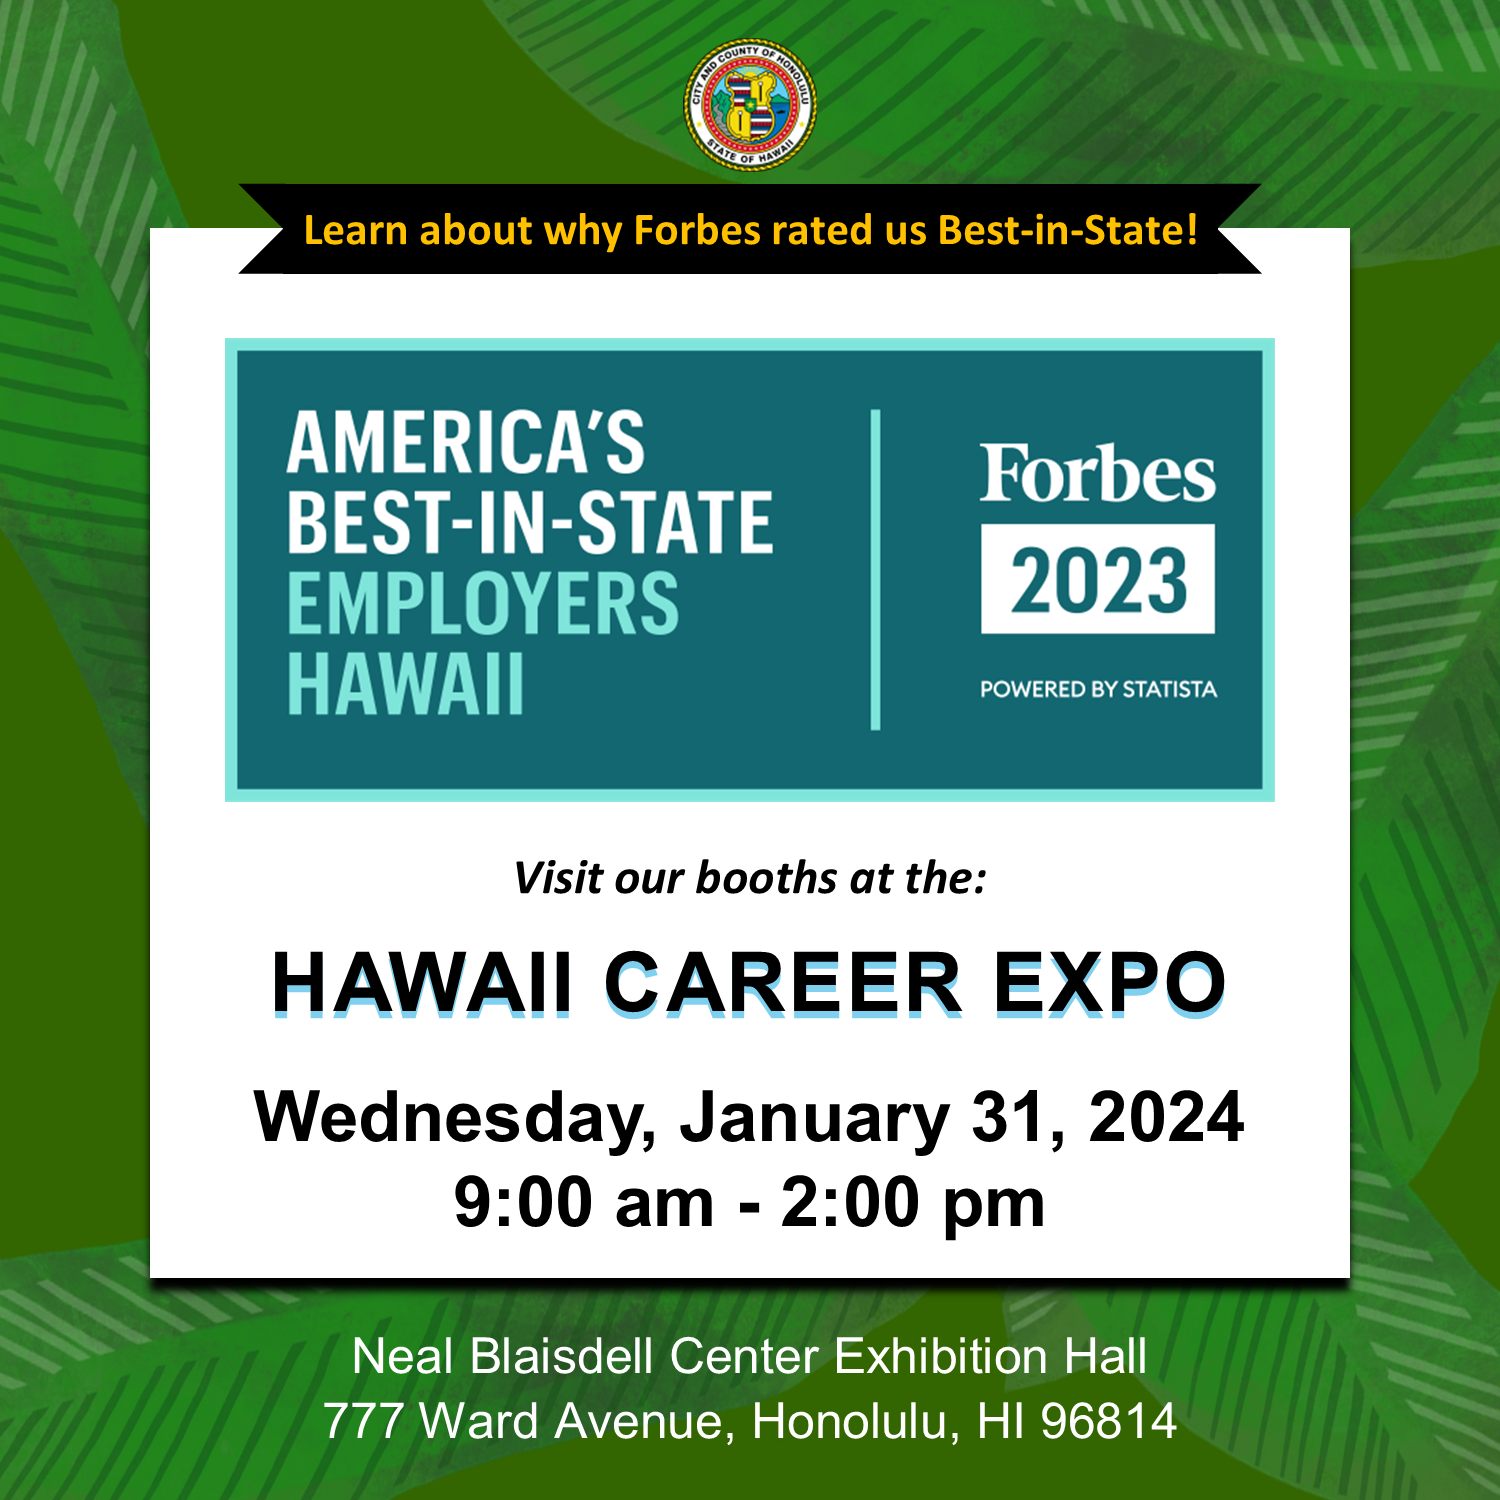 Hawaii Career Expo Jan 31st